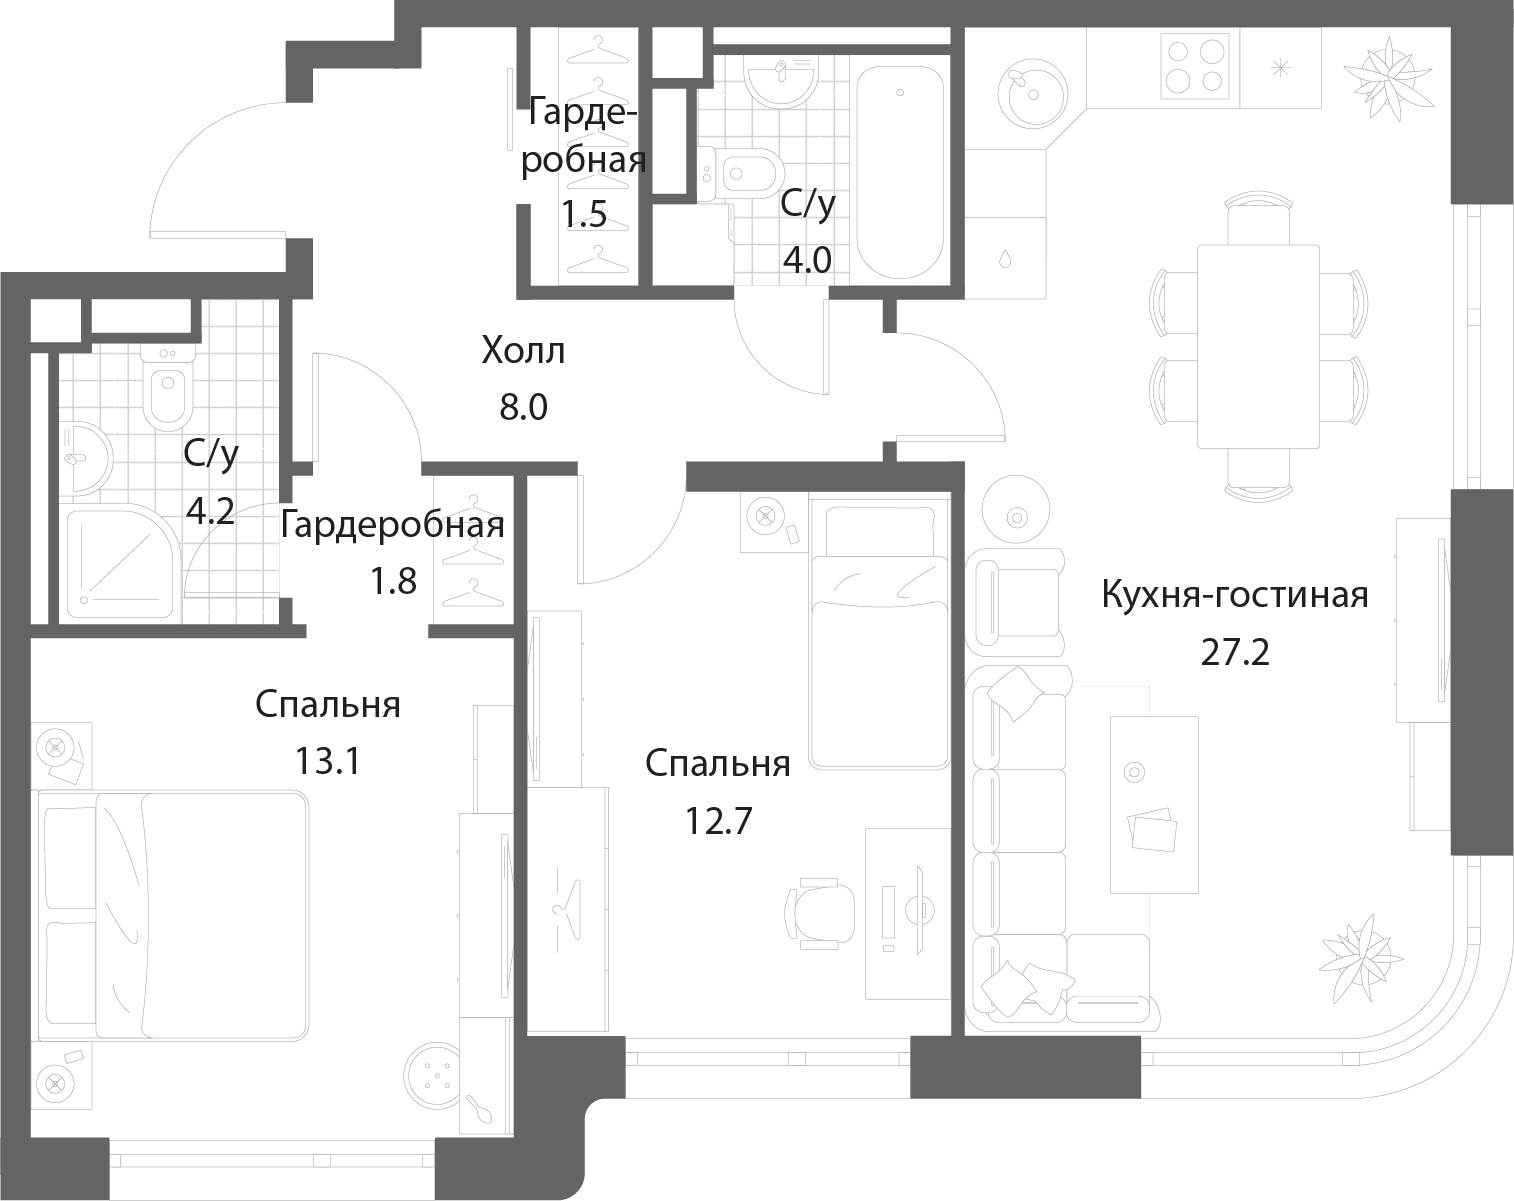 2-комнатная квартира с отделкой в ЖК WINGS апартаменты на Крыленко на 8 этаже в 1 секции. Дом сдан.